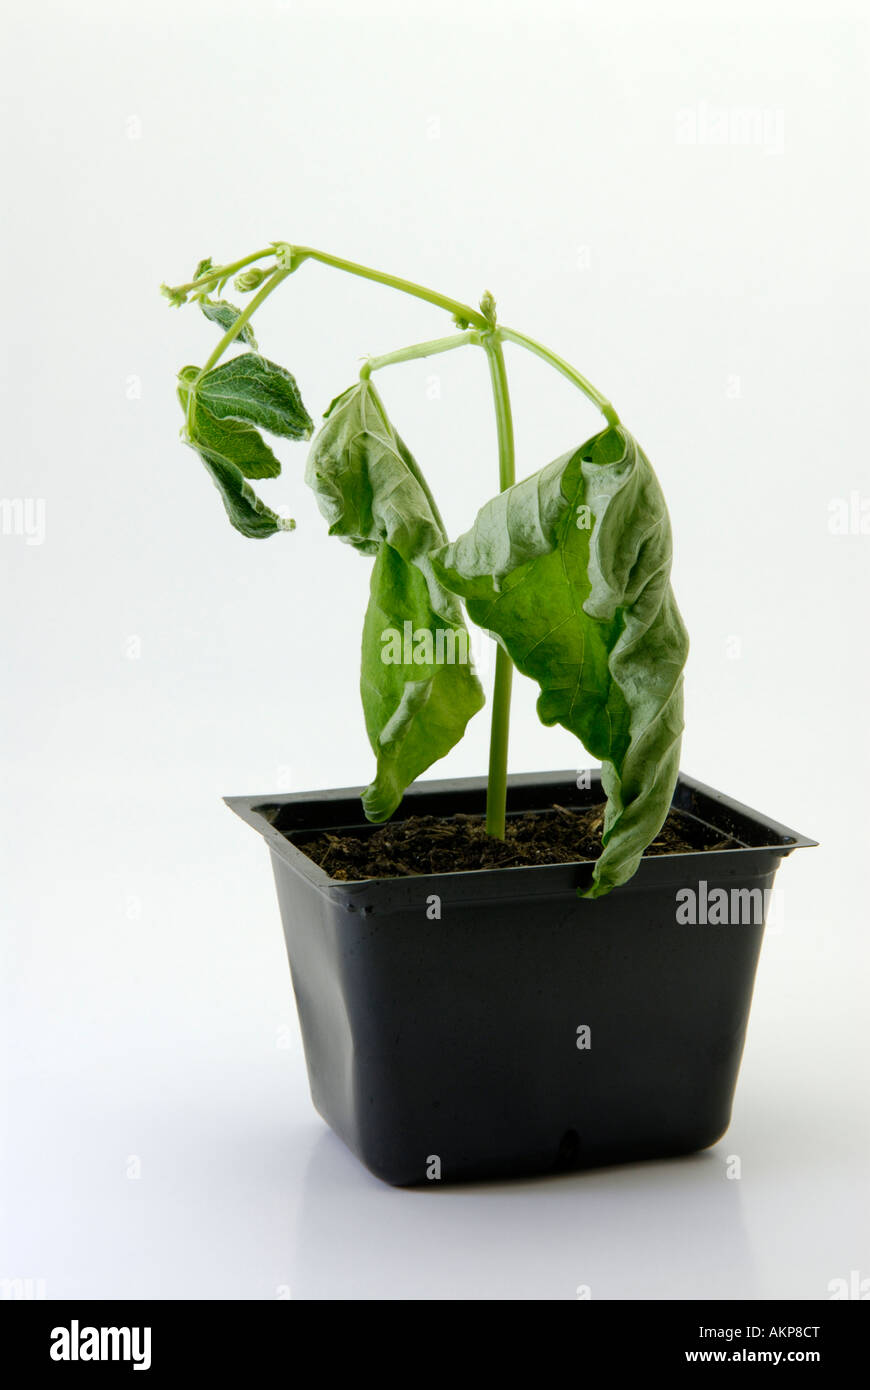 Pflanzen Sie welken, sterben vor Austrocknung dehydriert Stockfotografie -  Alamy